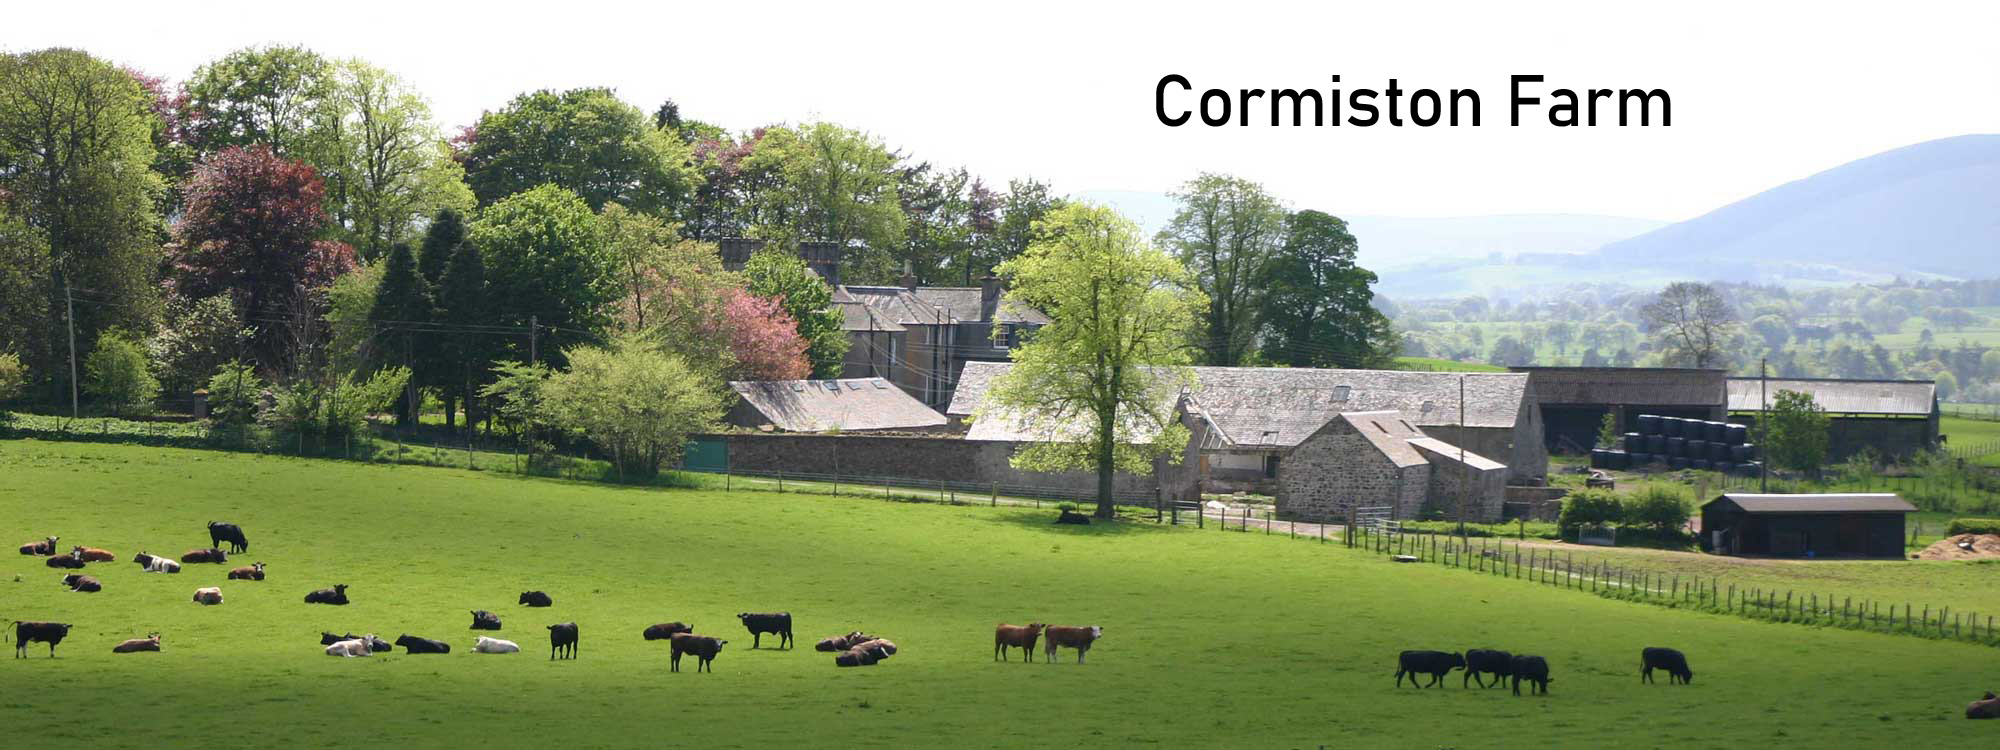 Cormiston Farm